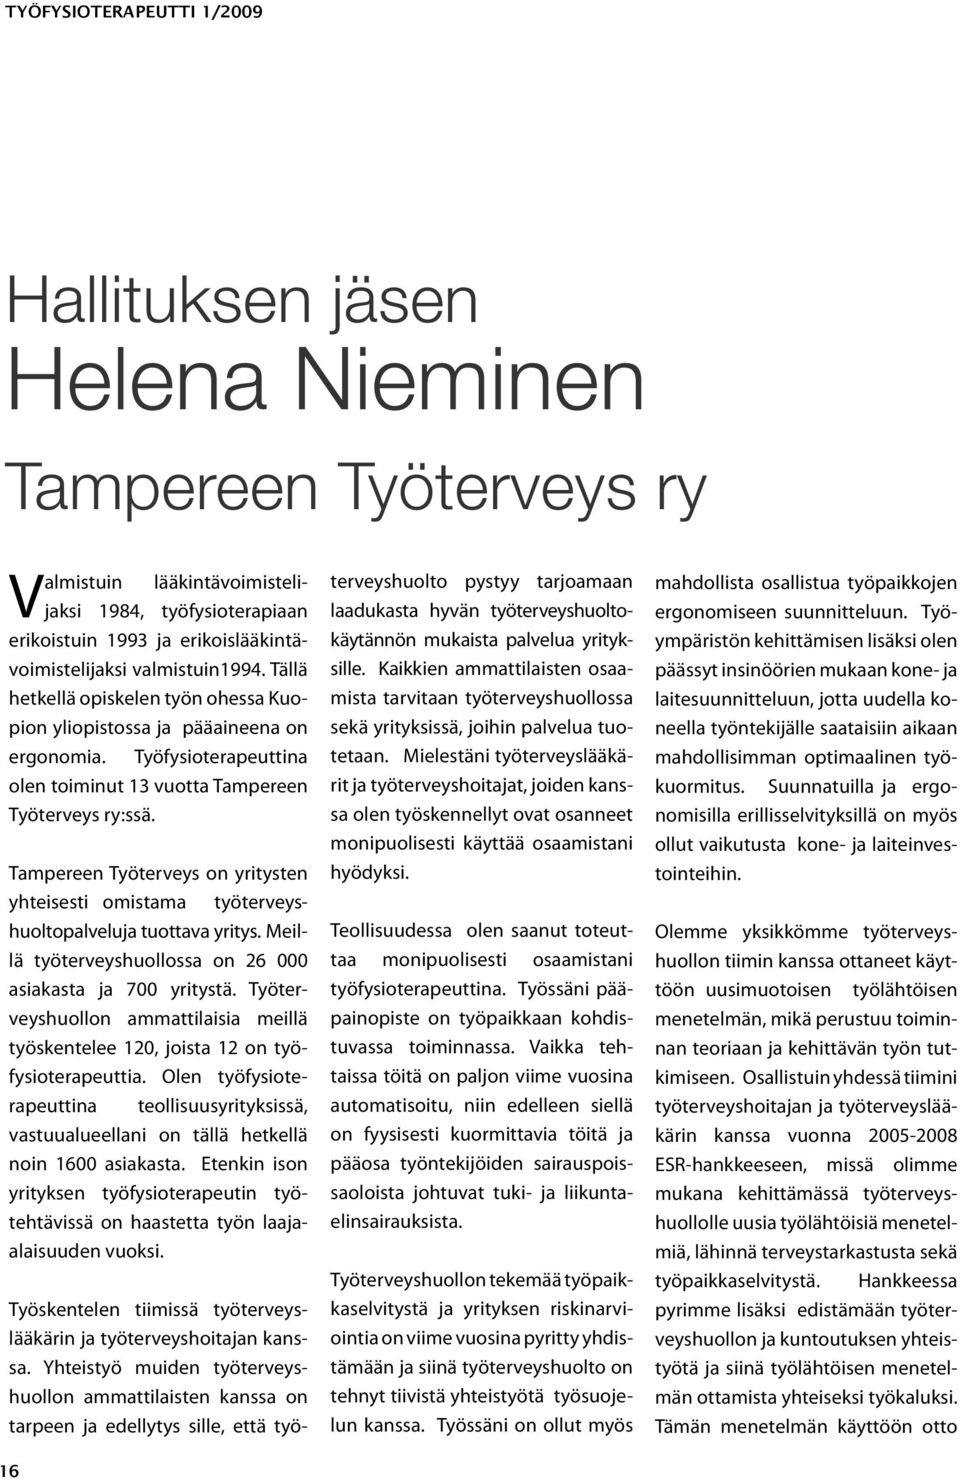 Tampereen Työterveys on yritysten yhteisesti omistama työterveyshuoltopalveluja tuottava yritys. Meillä työterveyshuollossa on 26 000 asiakasta ja 700 yritystä.